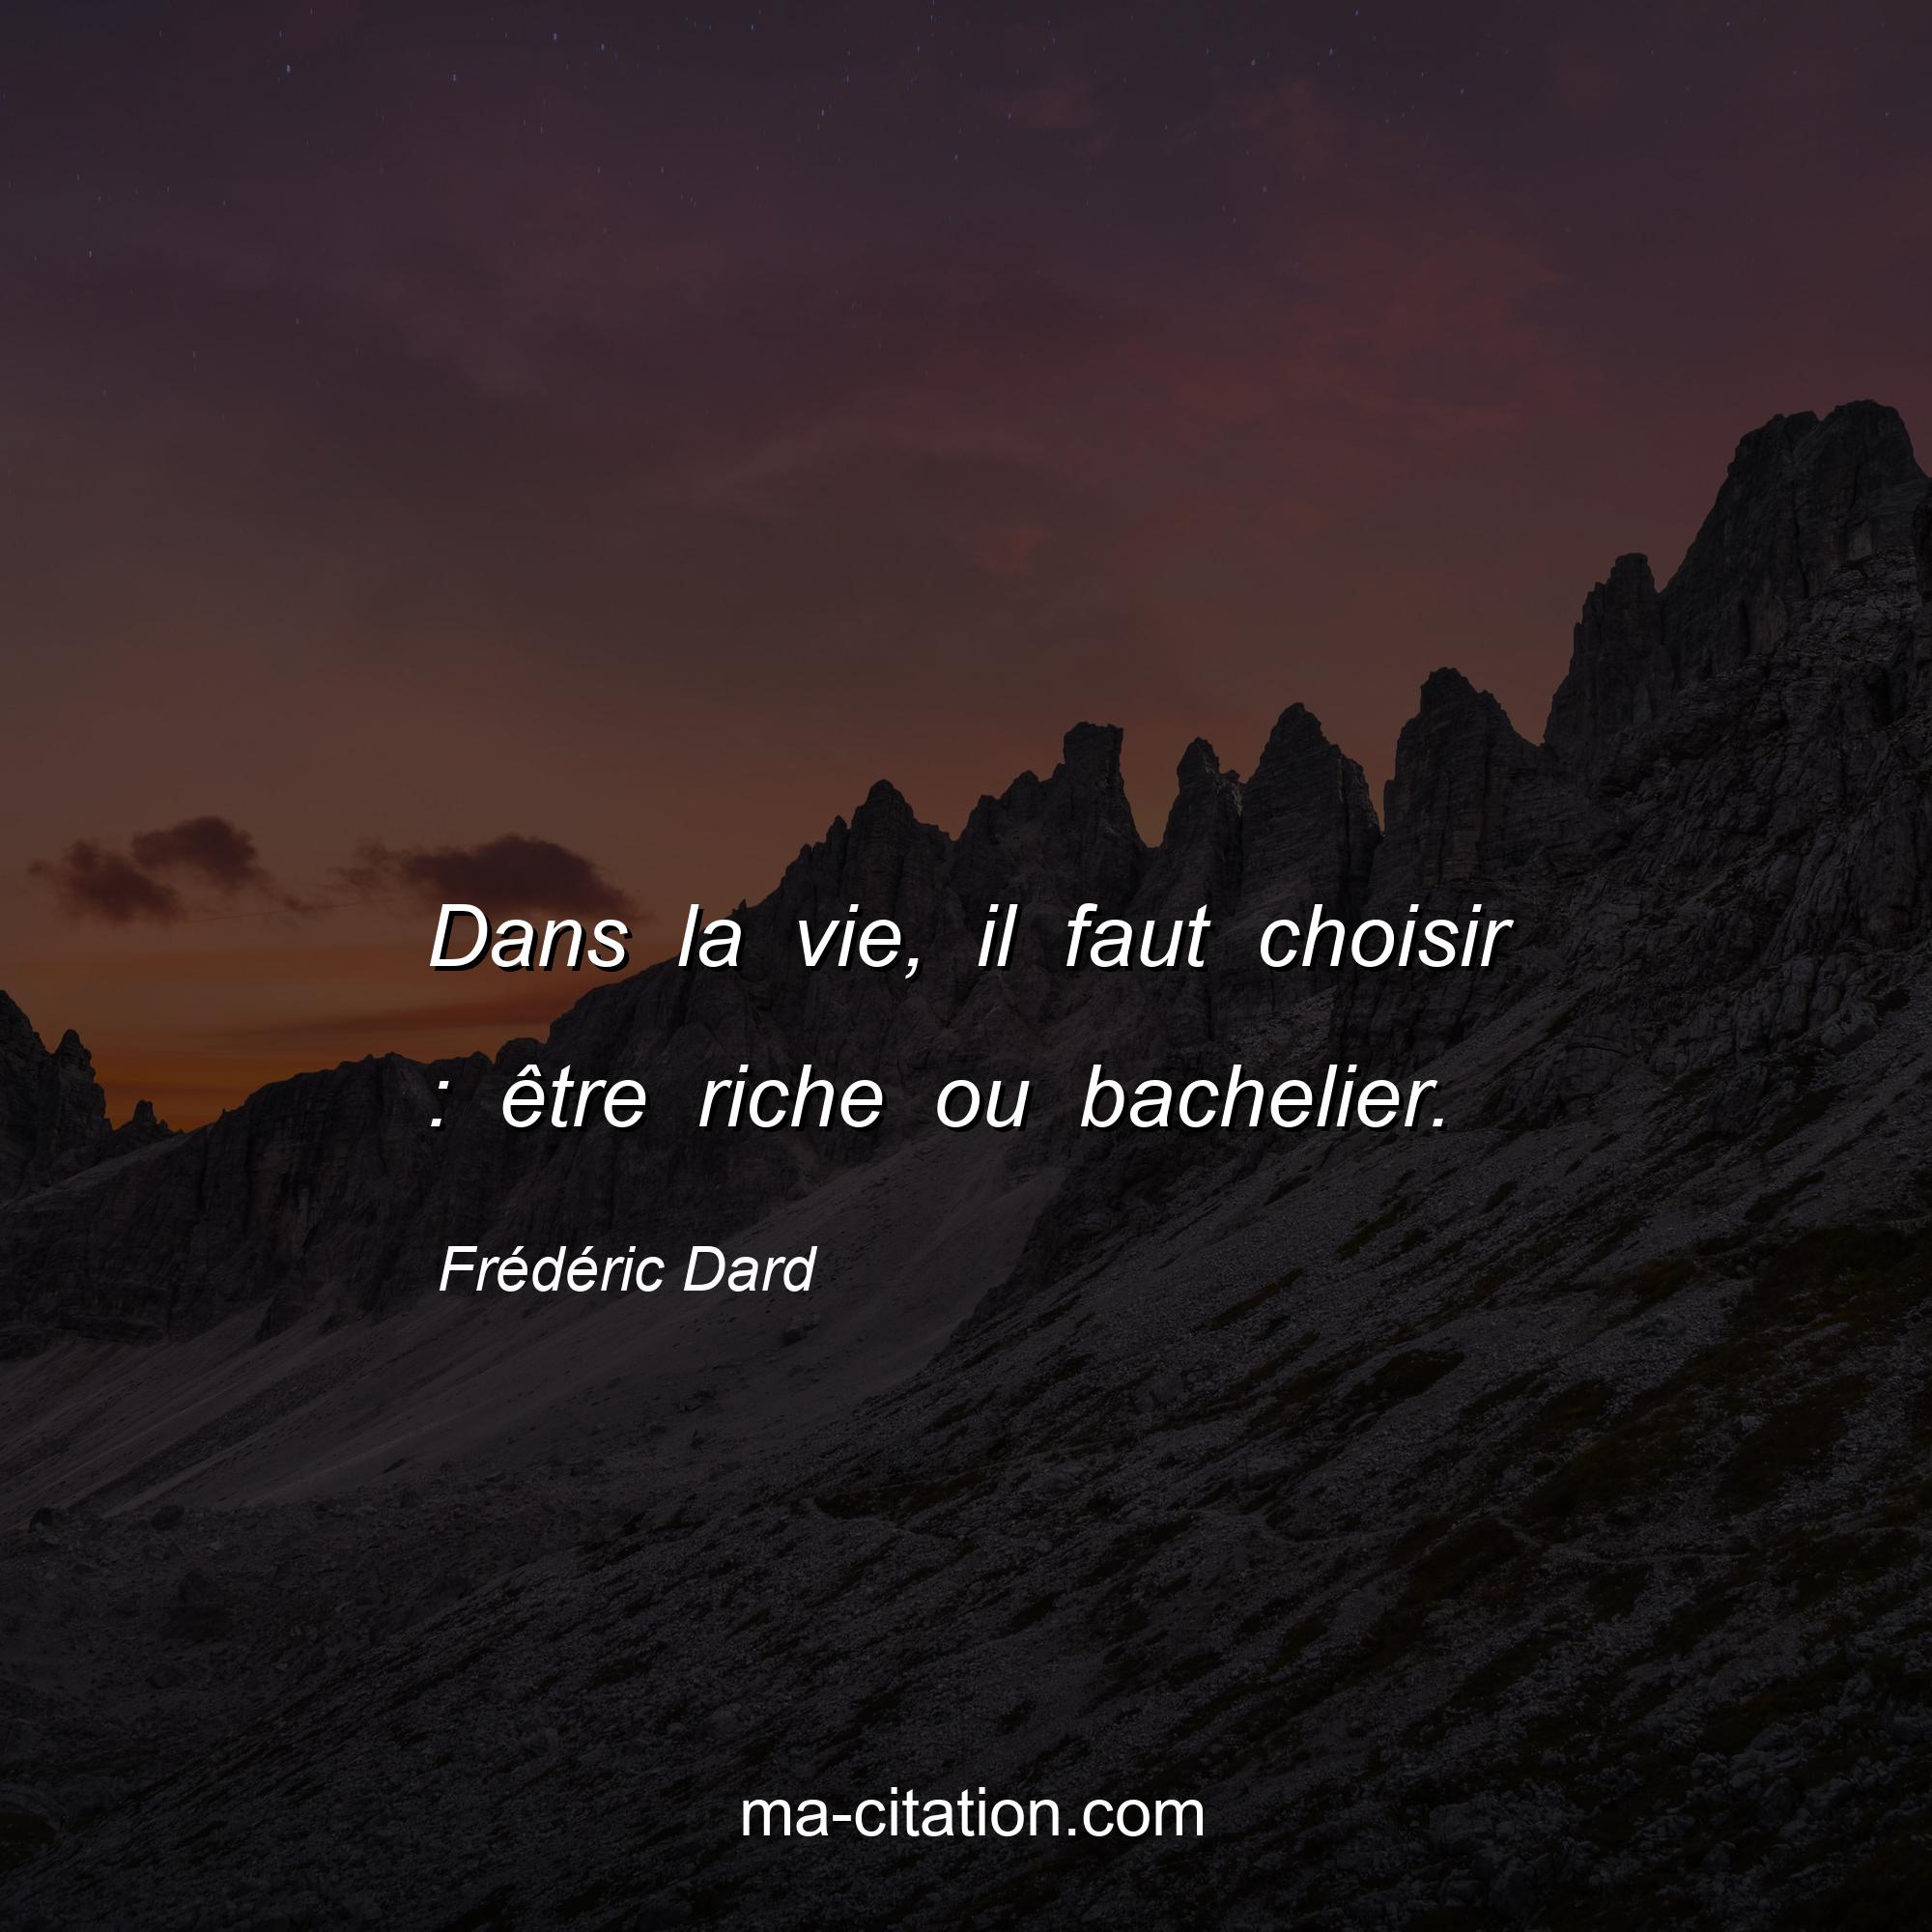 Frédéric Dard : Dans la vie, il faut choisir : être riche ou bachelier.